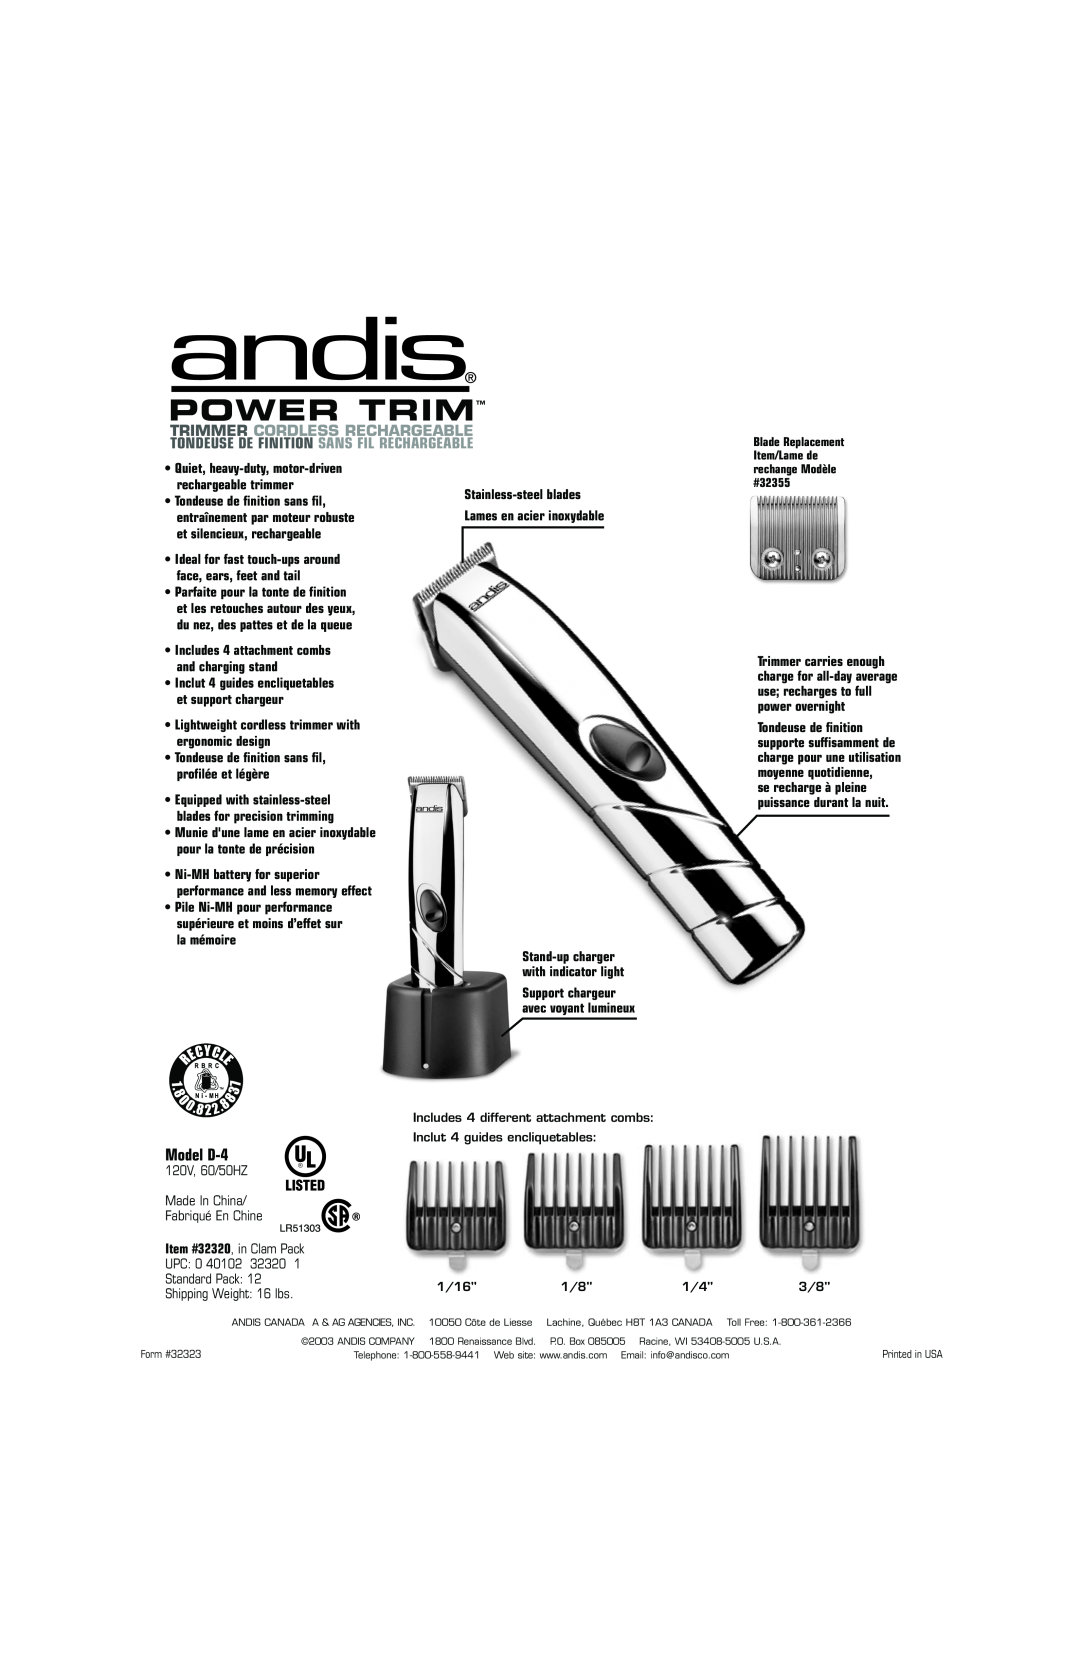 Andis Company D-4 120V Power Trim, Model D-4, Trimmer Cordless Rechargeable, Tondeuse De Finition Sans Fil Rechargeable 